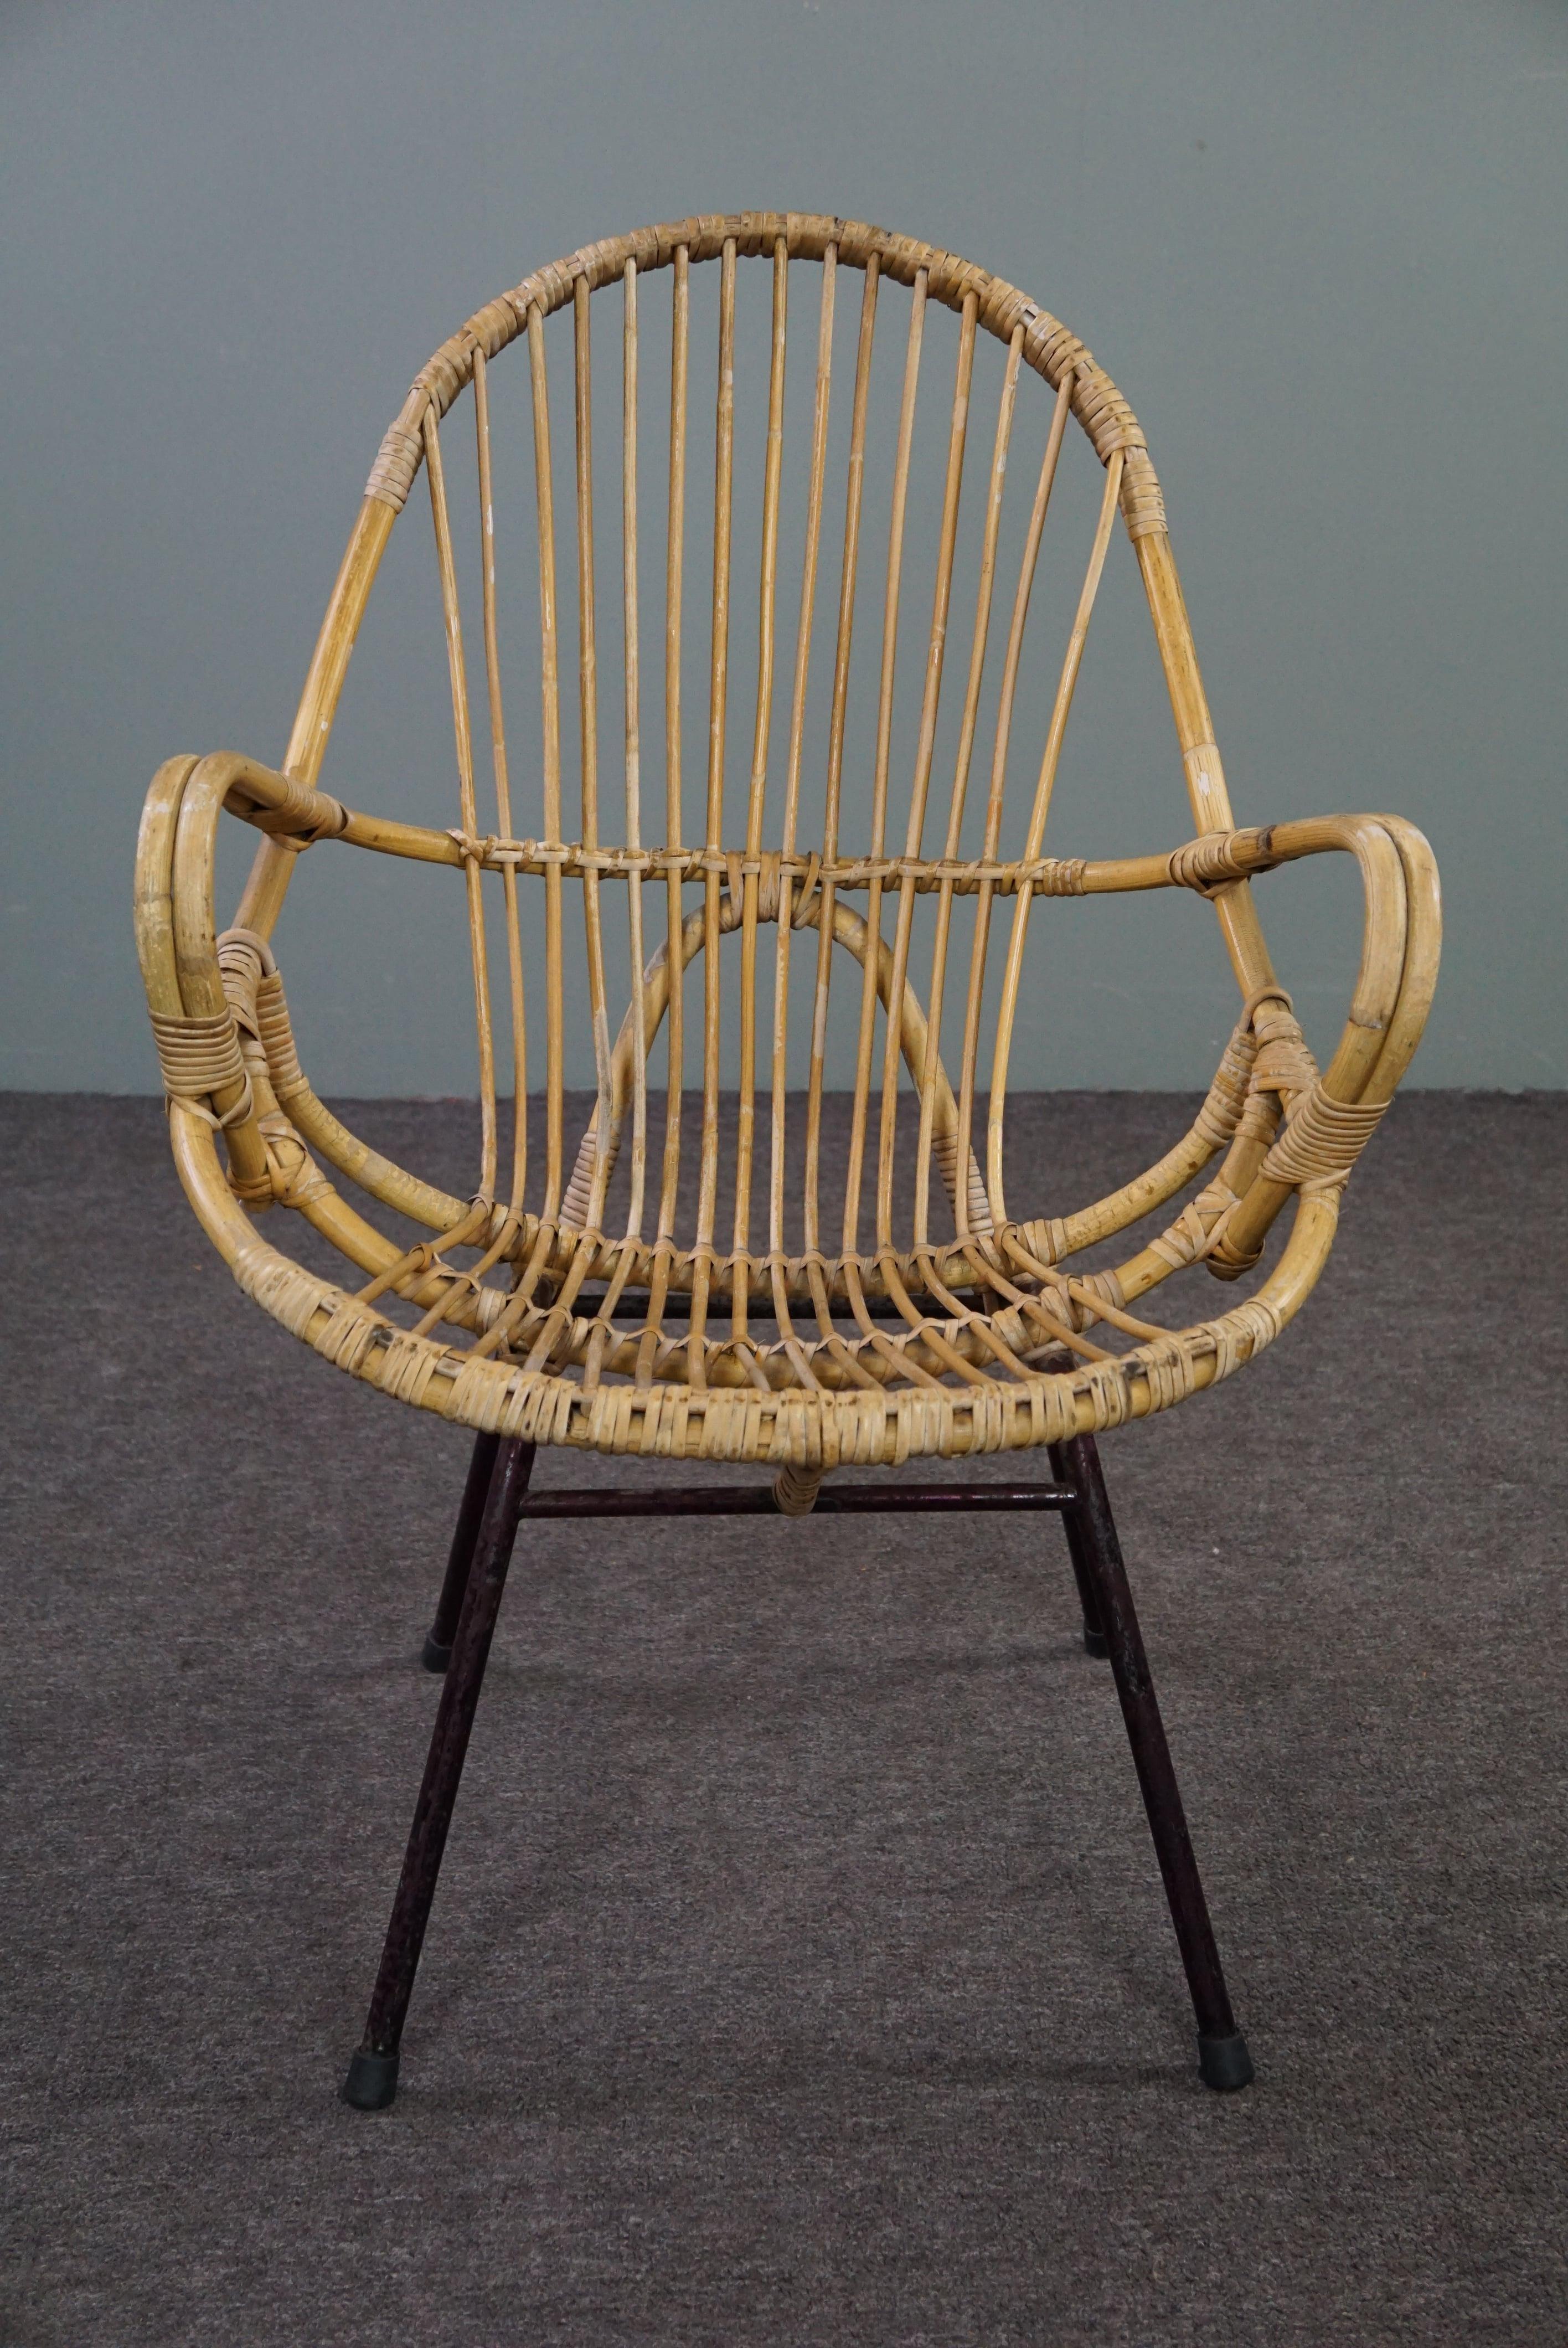 Ce magnifique fauteuil avec accoudoirs a été fabriqué dans les années 1960 aux Pays-Bas.

Ce joli fauteuil en rotin présente un design saisissant. Le fauteuil a un look moderne et les accoudoirs rendent le confort d'assise très agréable. Le